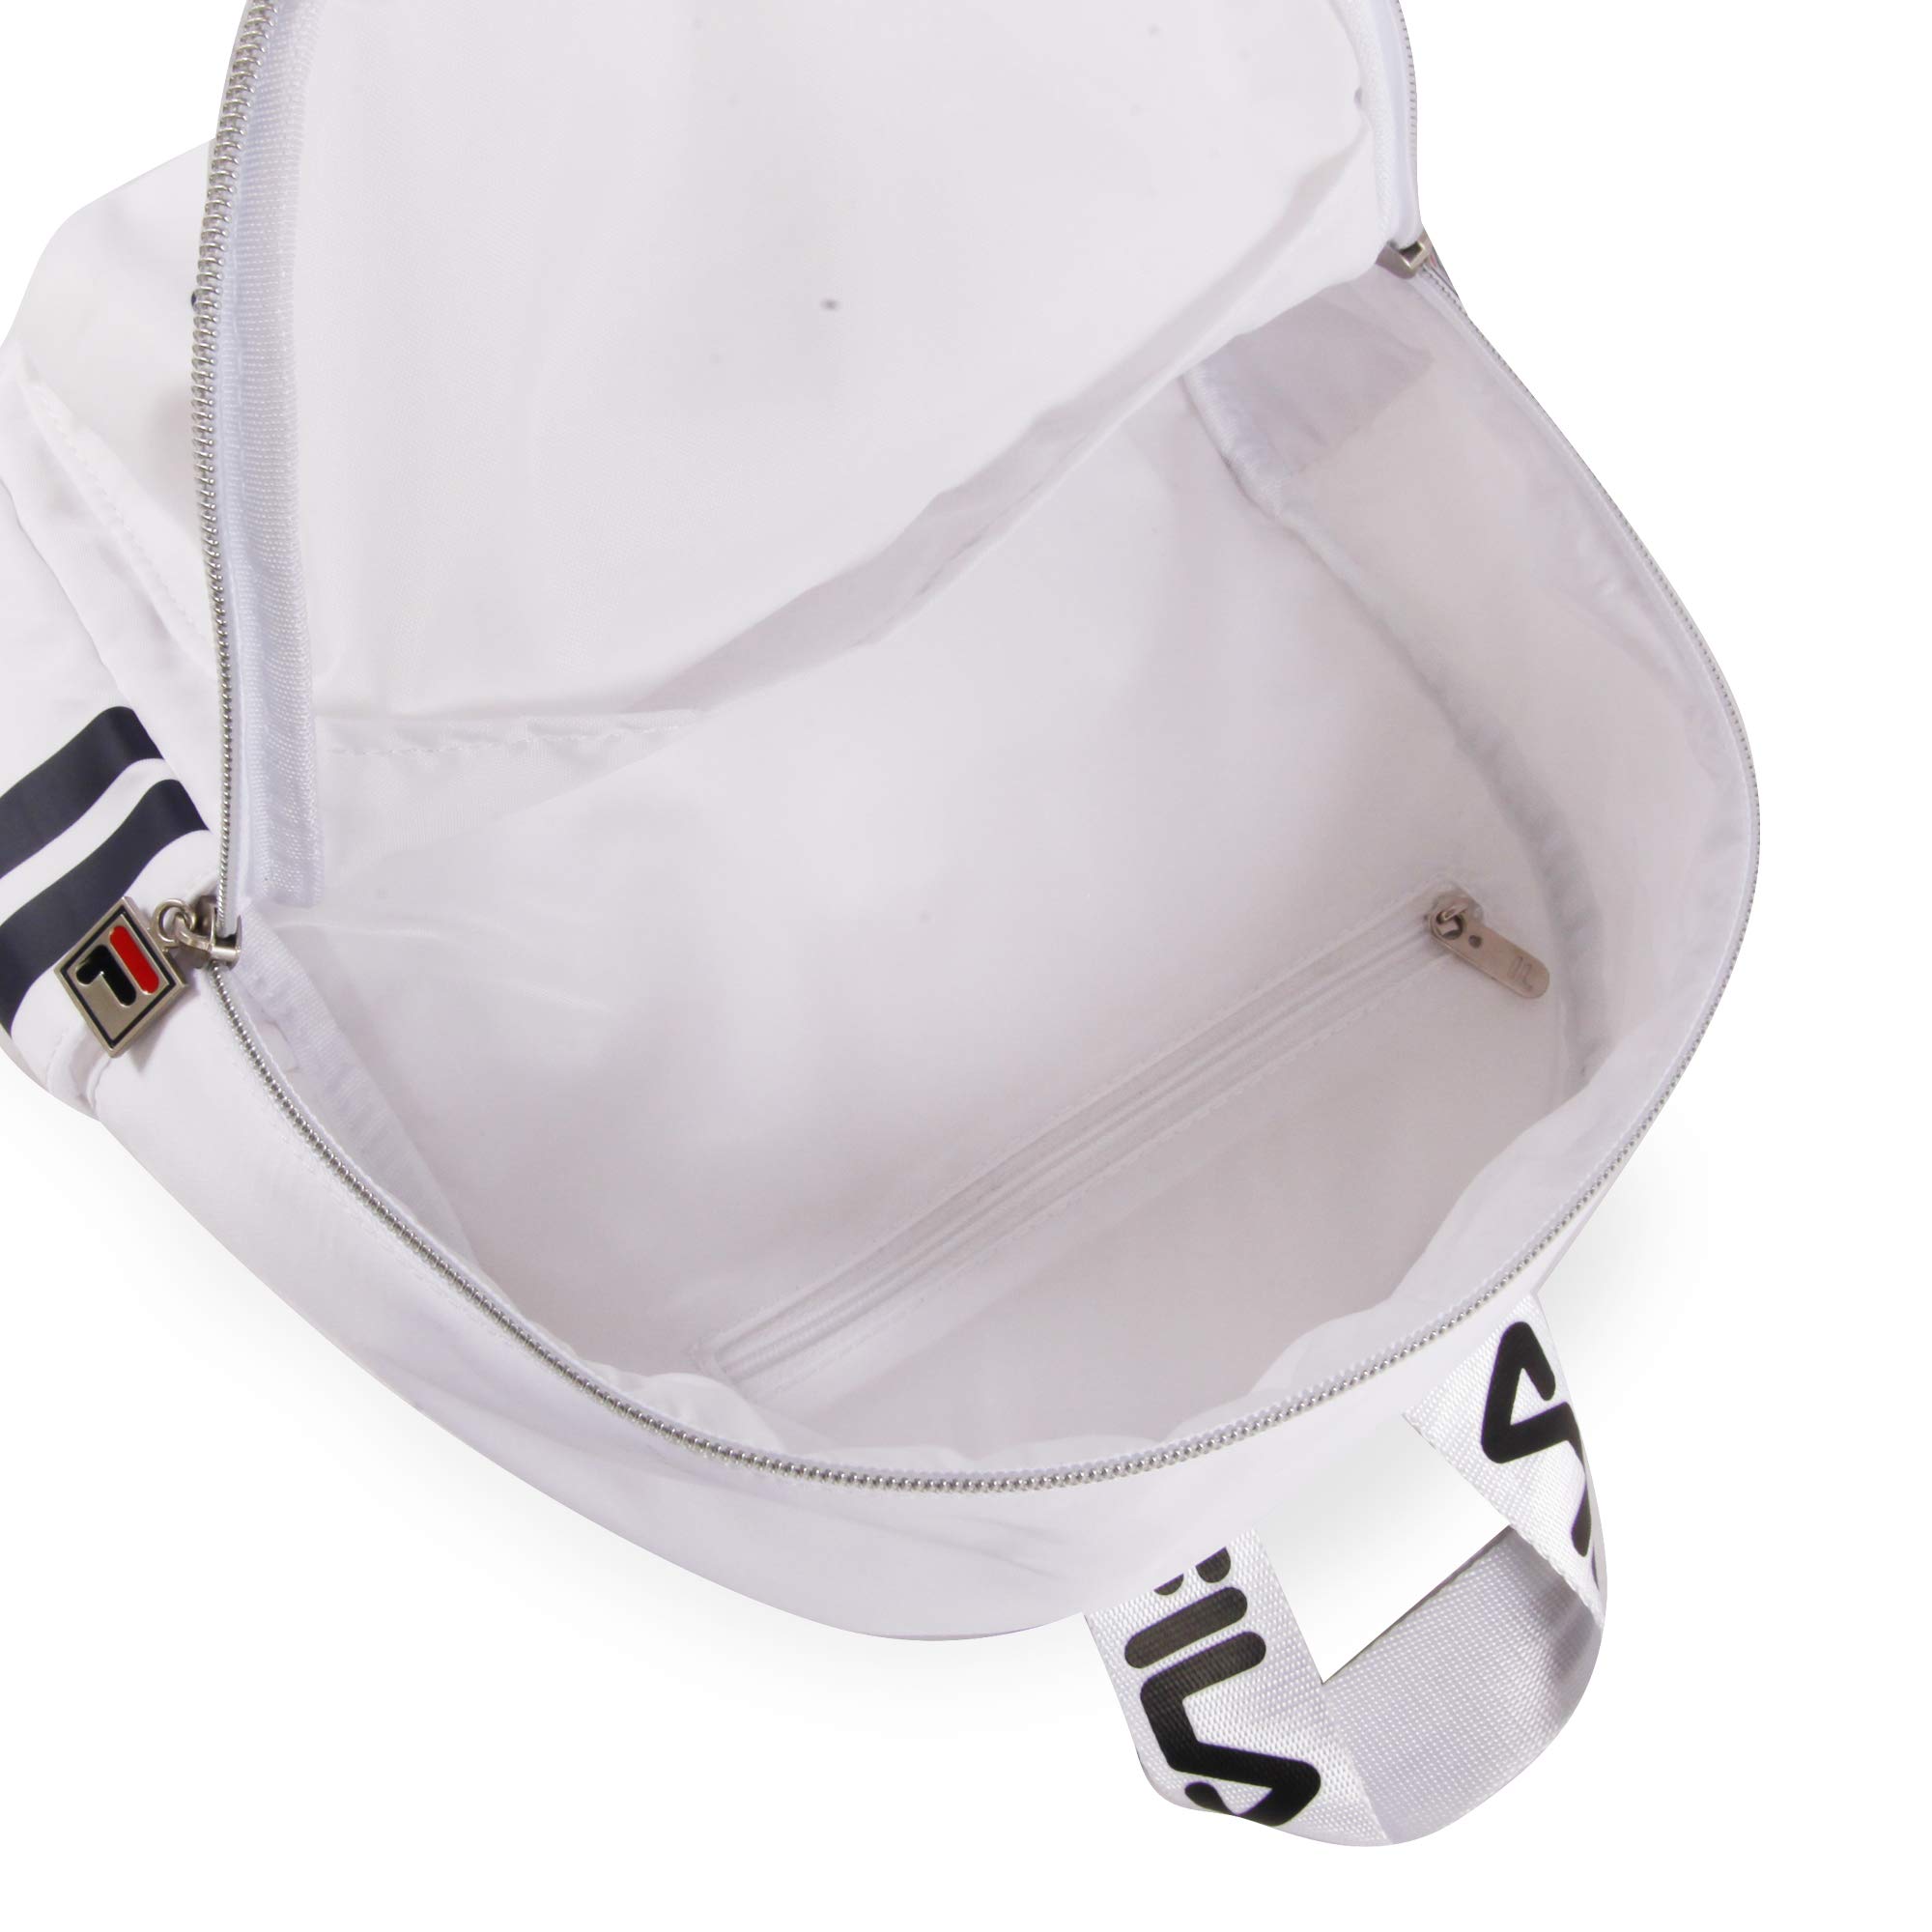 Fila Backpack, White, 12